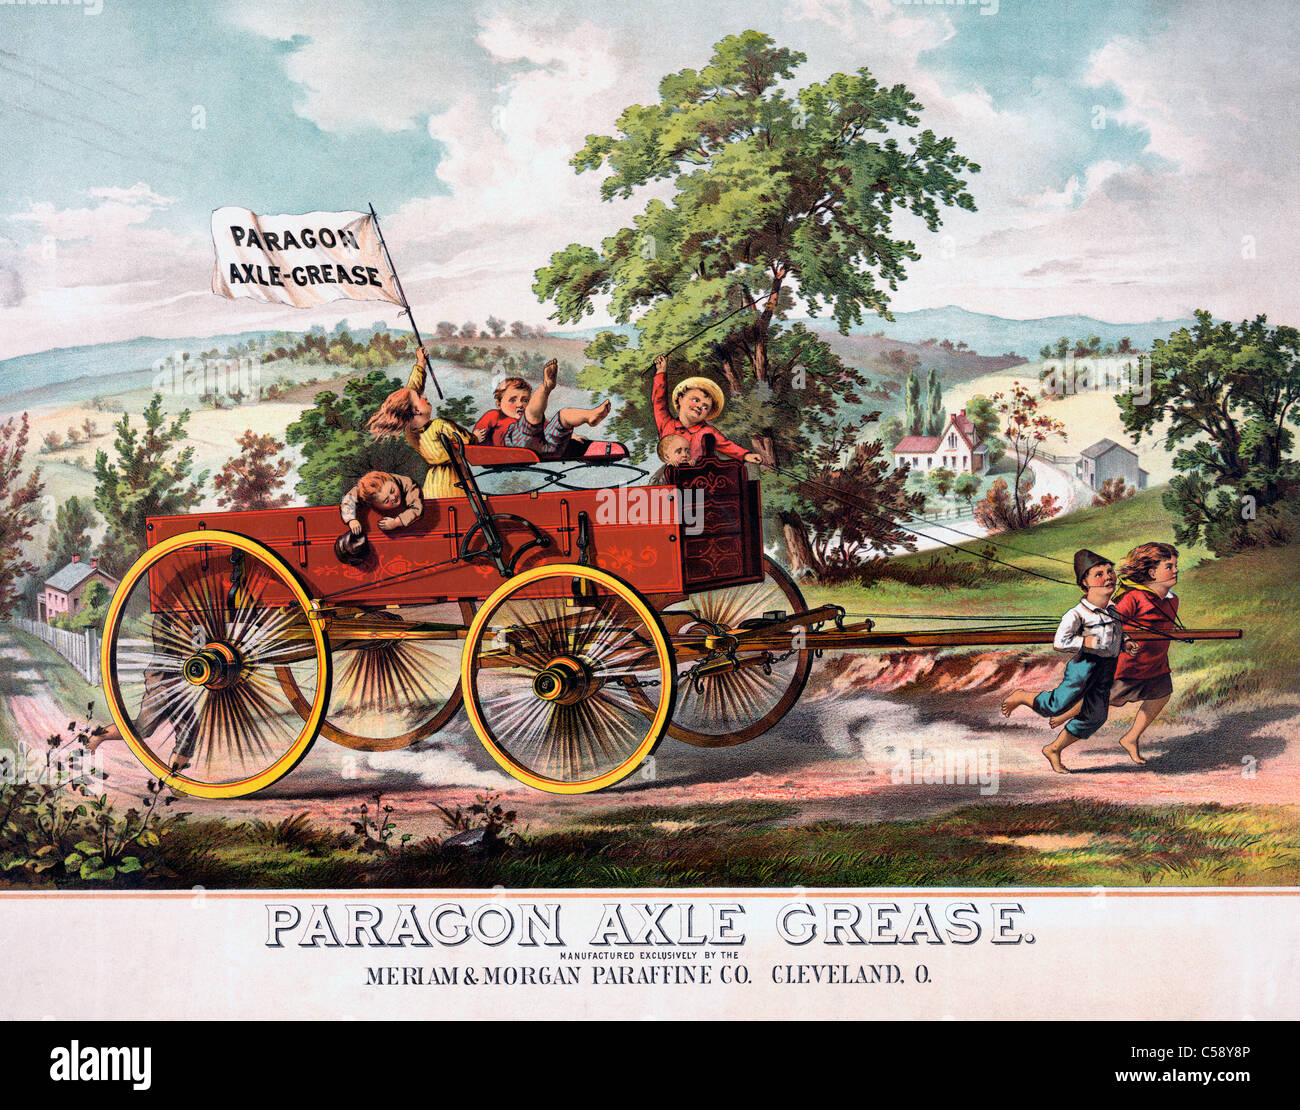 Paragon axle grease advertisement, circa 1880 Stock Photo